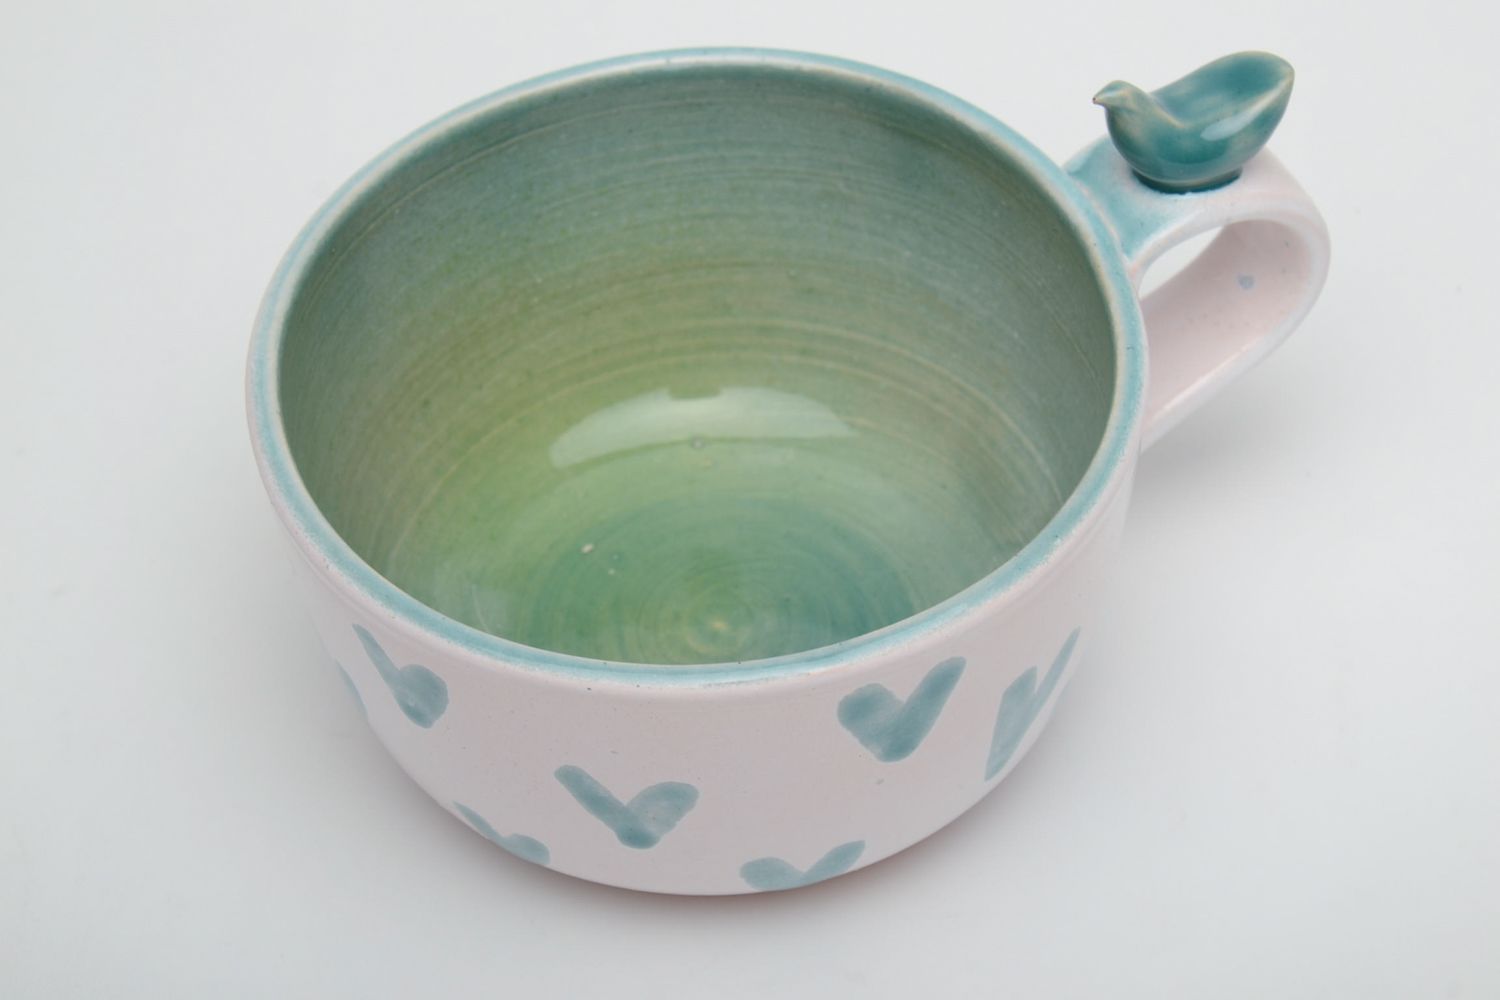 Глиняная чашка расписанная эмалью и глазурью с птичкой фото 3